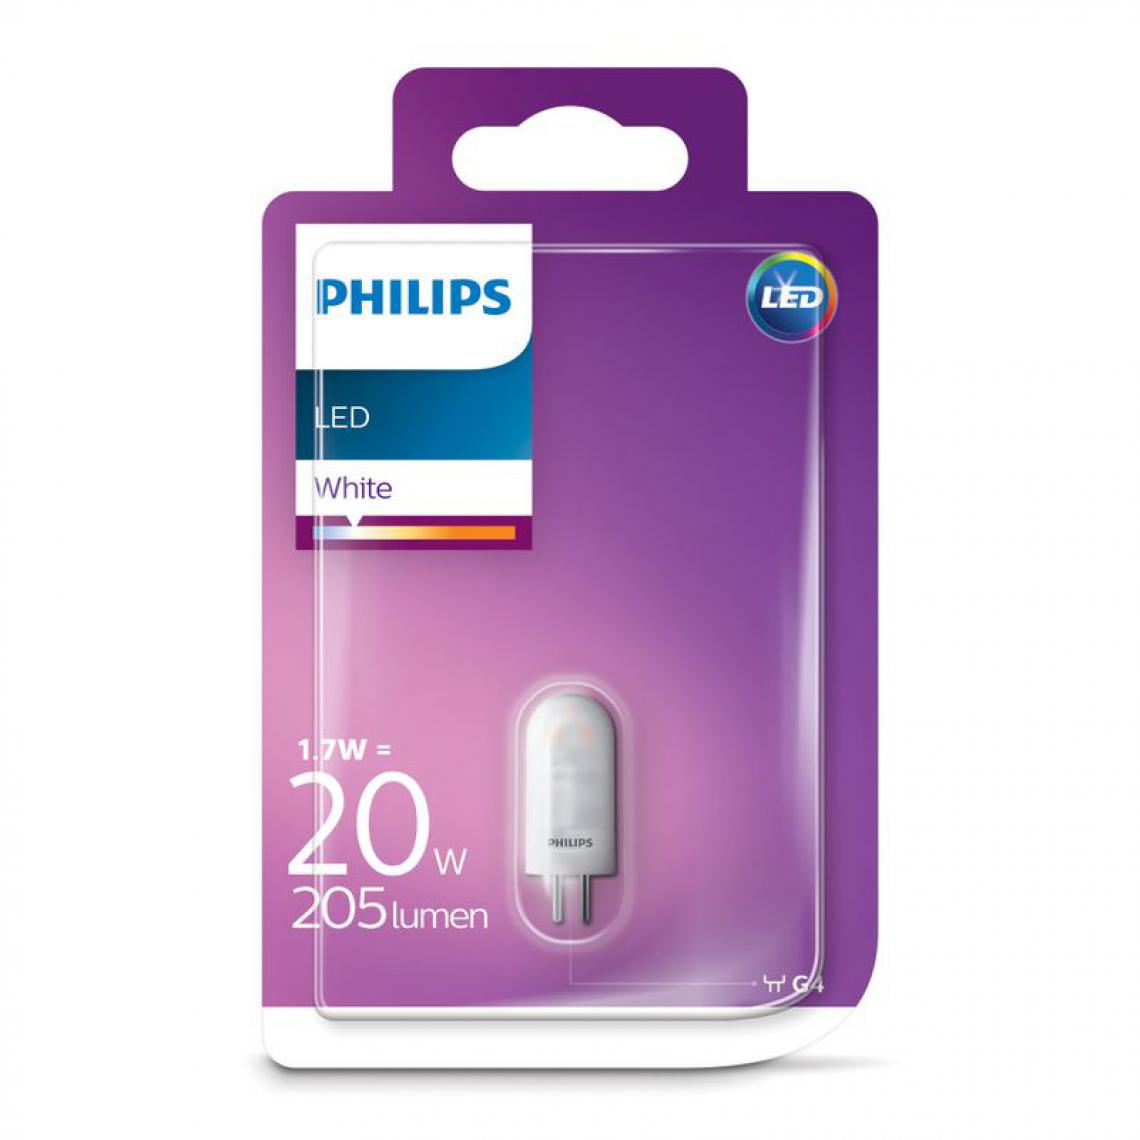 Philips - Ampoule LED 1,7W équiv 20W 205 lm G4 Blanc chaud - Ampoules LED